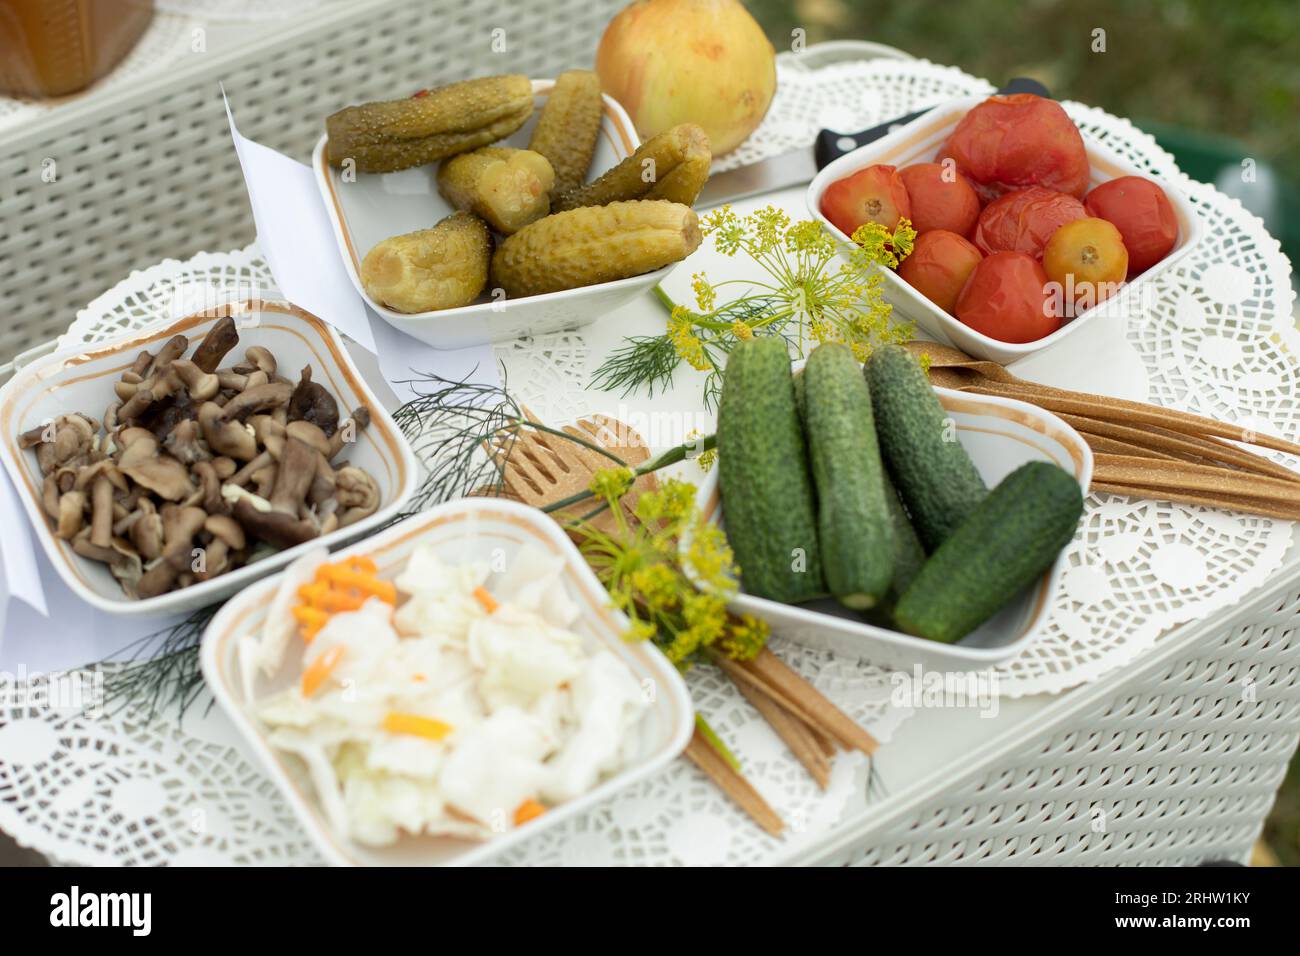 Essen auf dem Tisch. Gurken aus dem Garten. Gurken und Tomaten auf Tellern. Herzhaftes Mittagessen. Natürliche Lebensmittel. Stockfoto